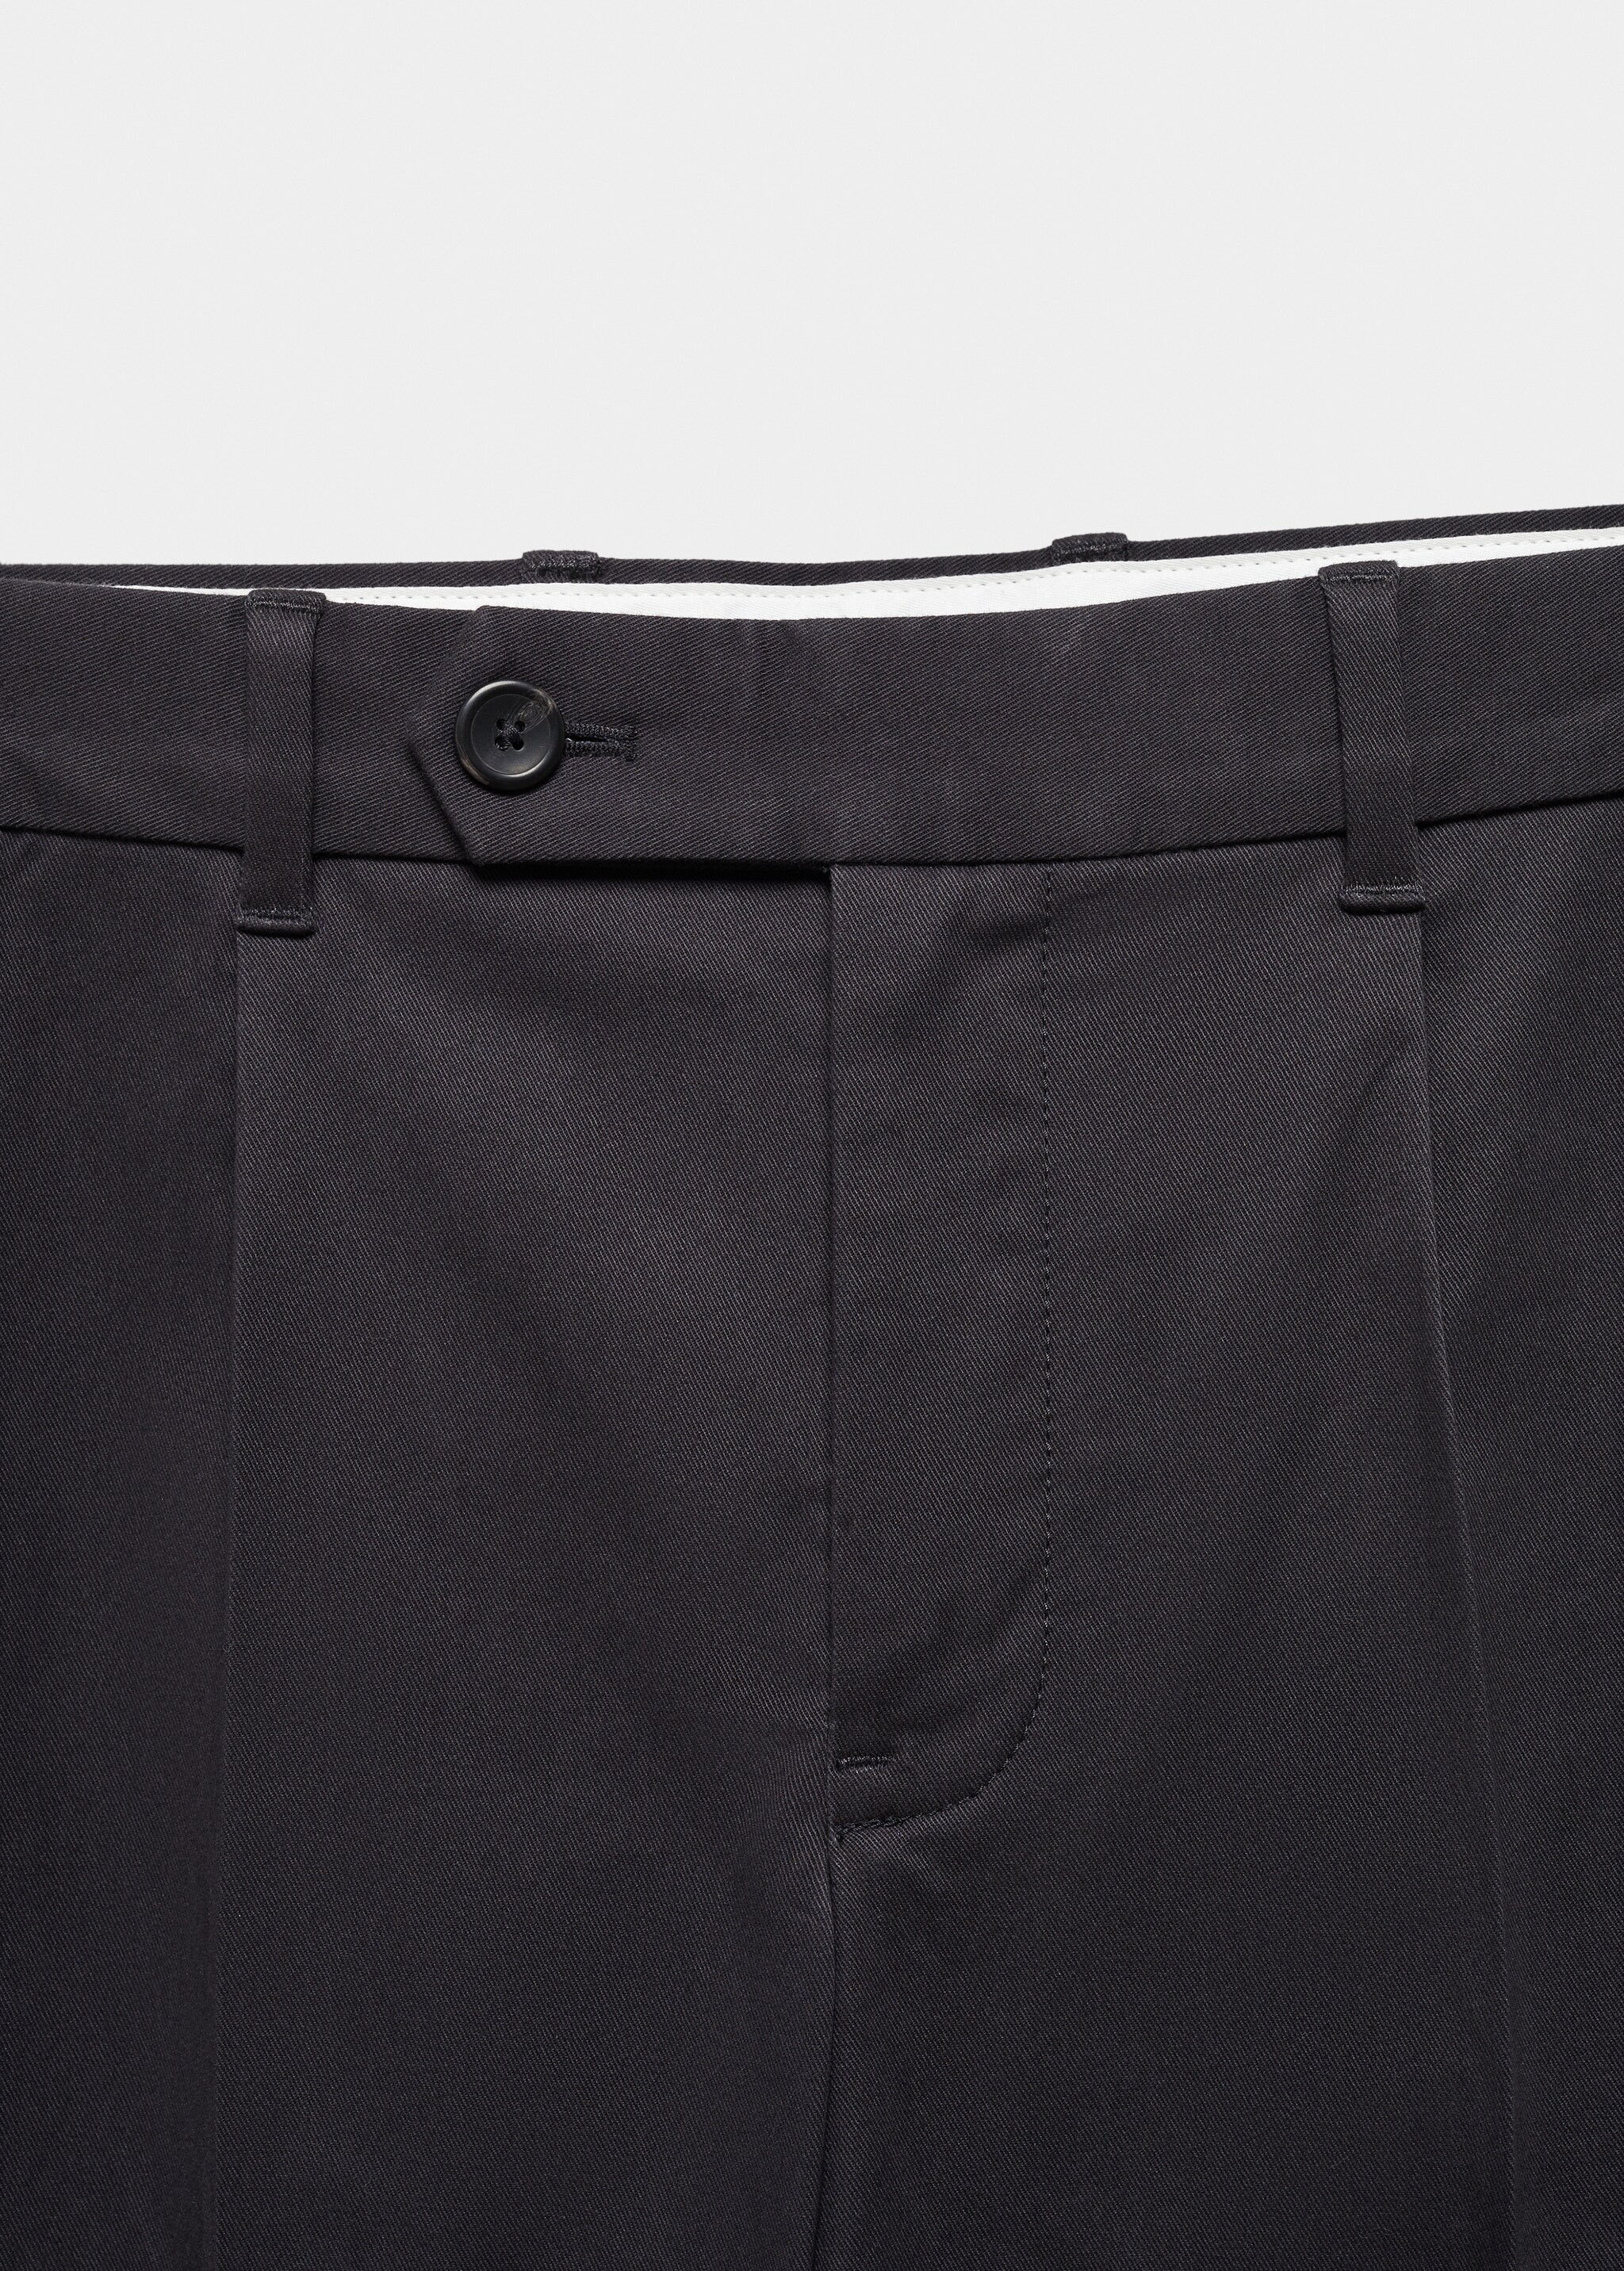 Pantalón algodón slim fit pinzas - Detalle del artículo 8